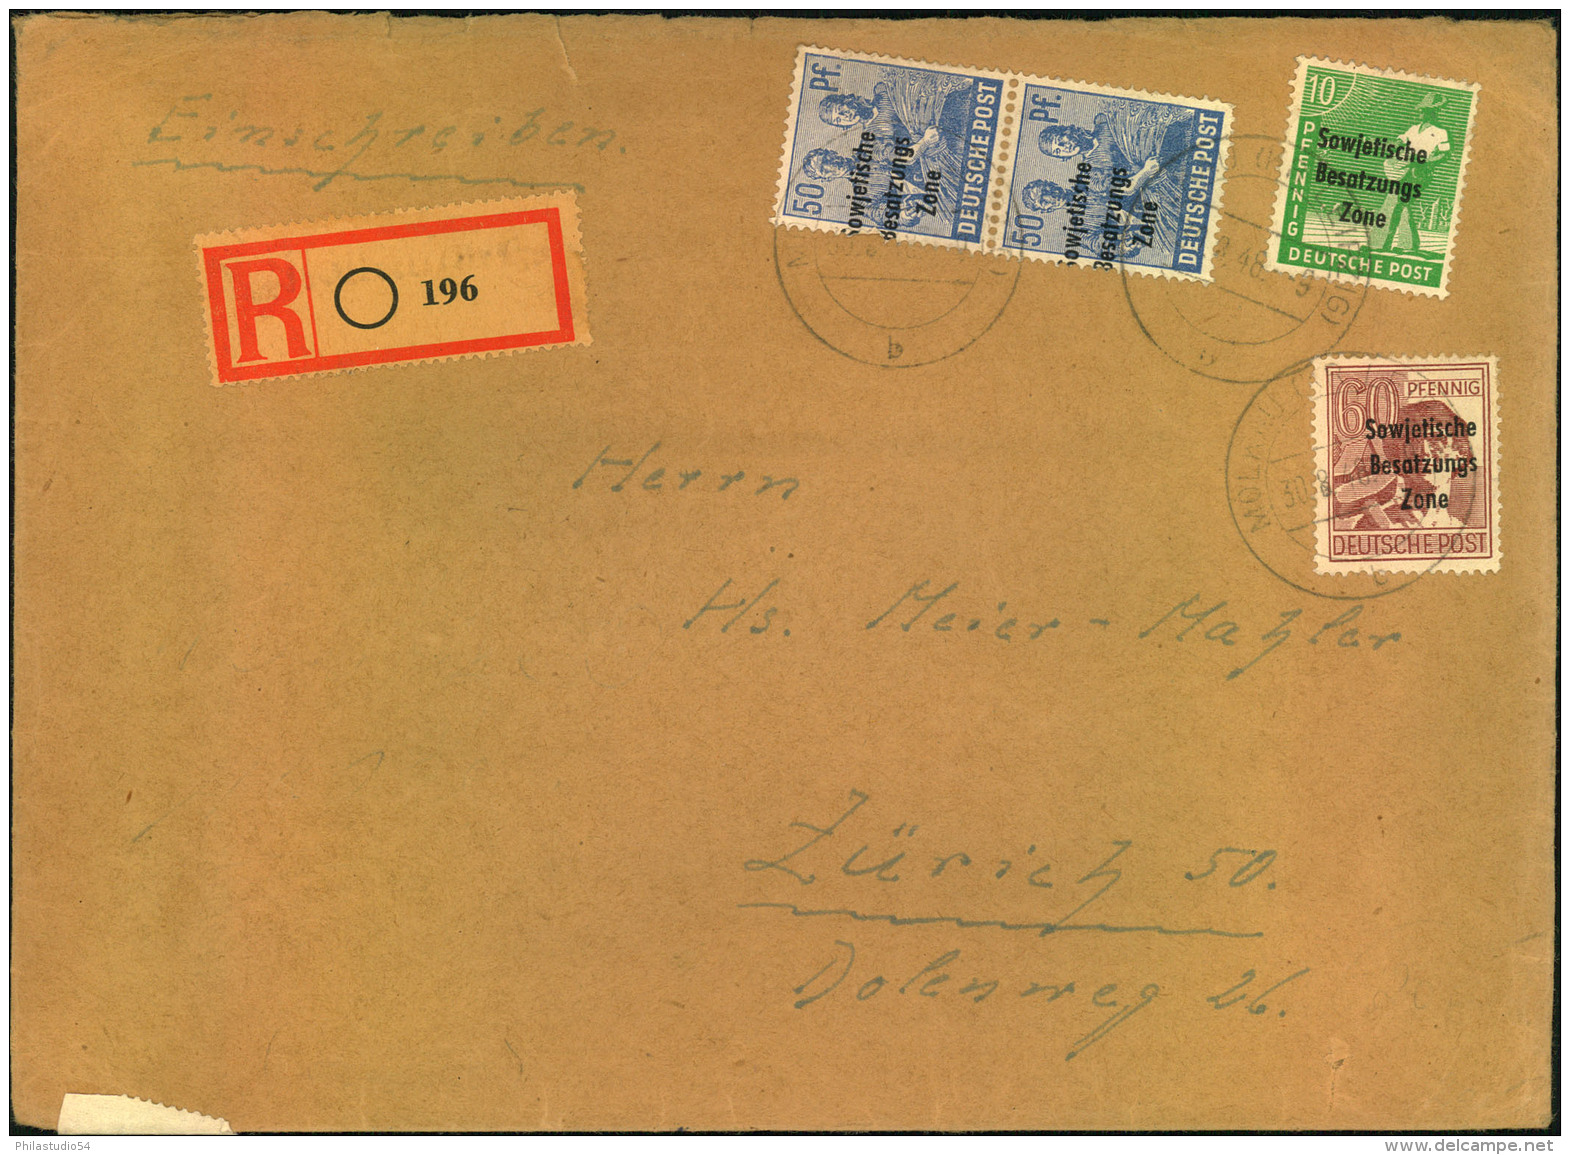 1949, Portogerechtes Einschreiben 41-60 Gramm Ab ""Â… (BZ. LEIPZIG)"" Nach Zürich. - Local Post Stamps